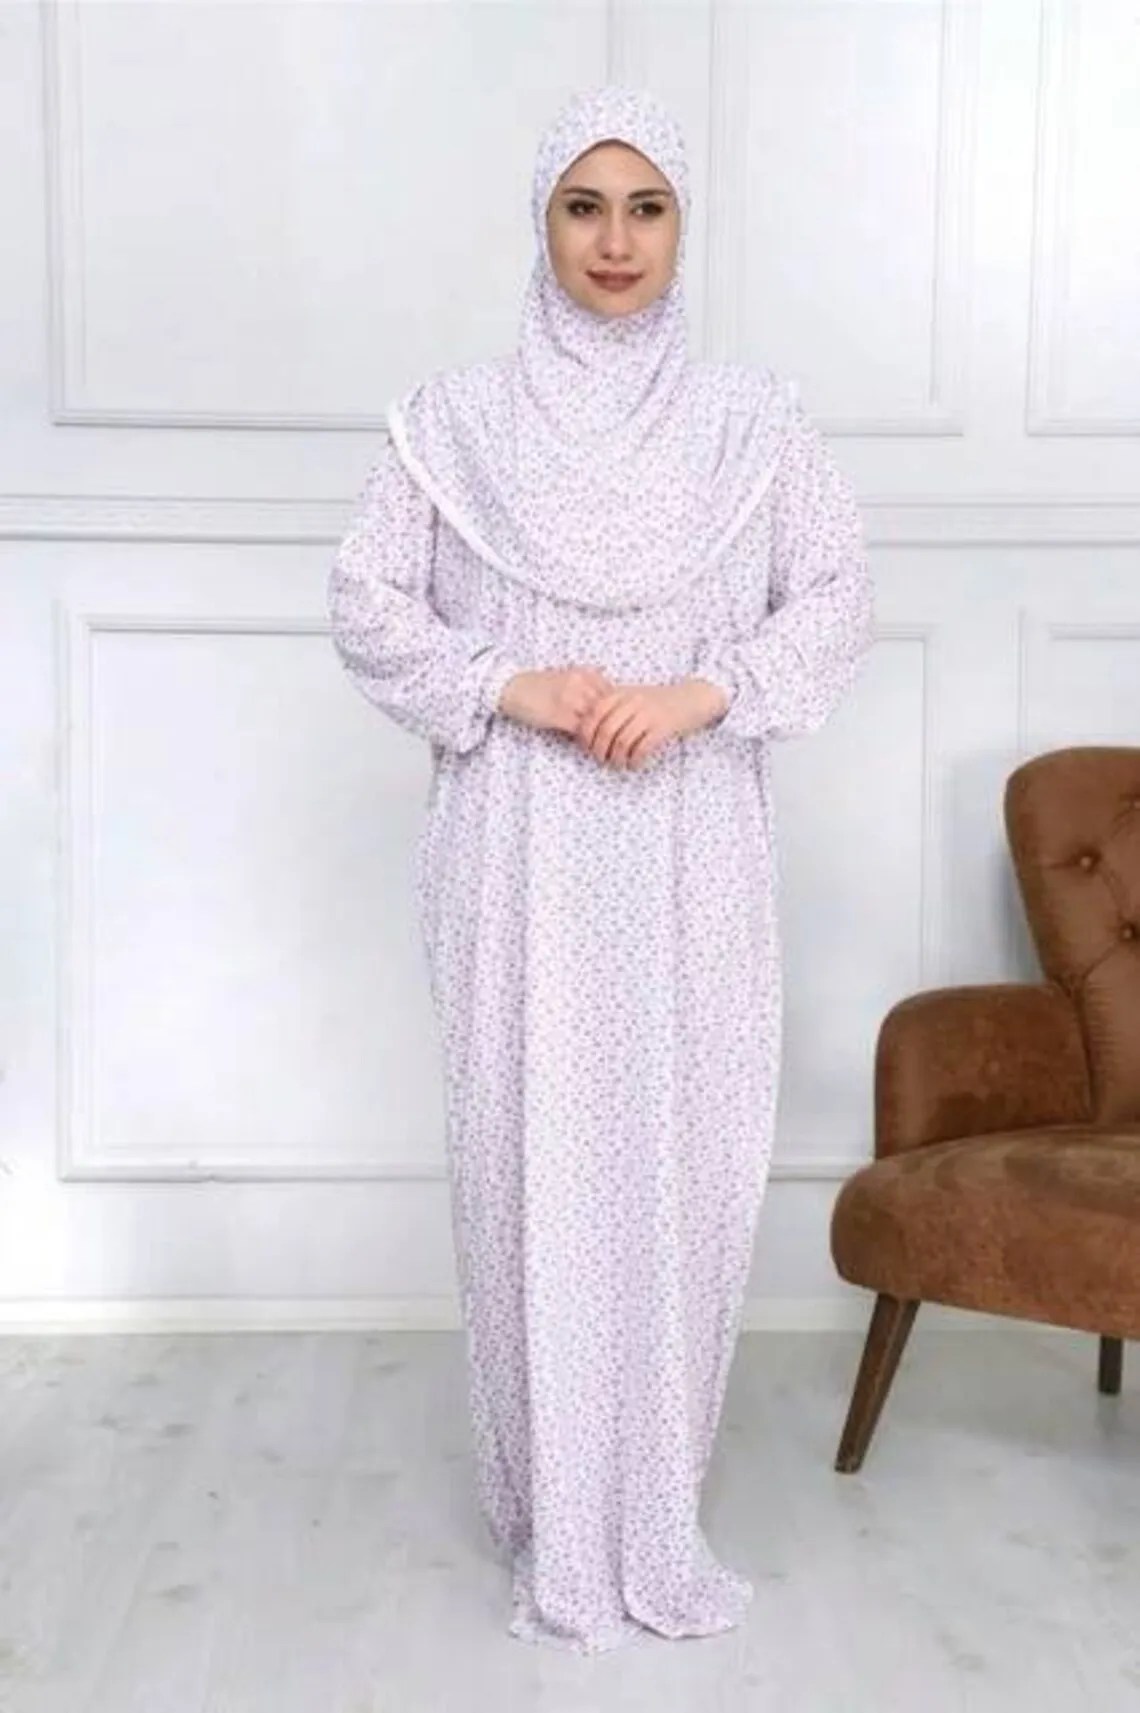 "Мусульманское полное покрытие абайя для молитв платье Свободный исламский традиционный хлопок Сделано в Турции женский тонкий Awe один 1 шт. ..."